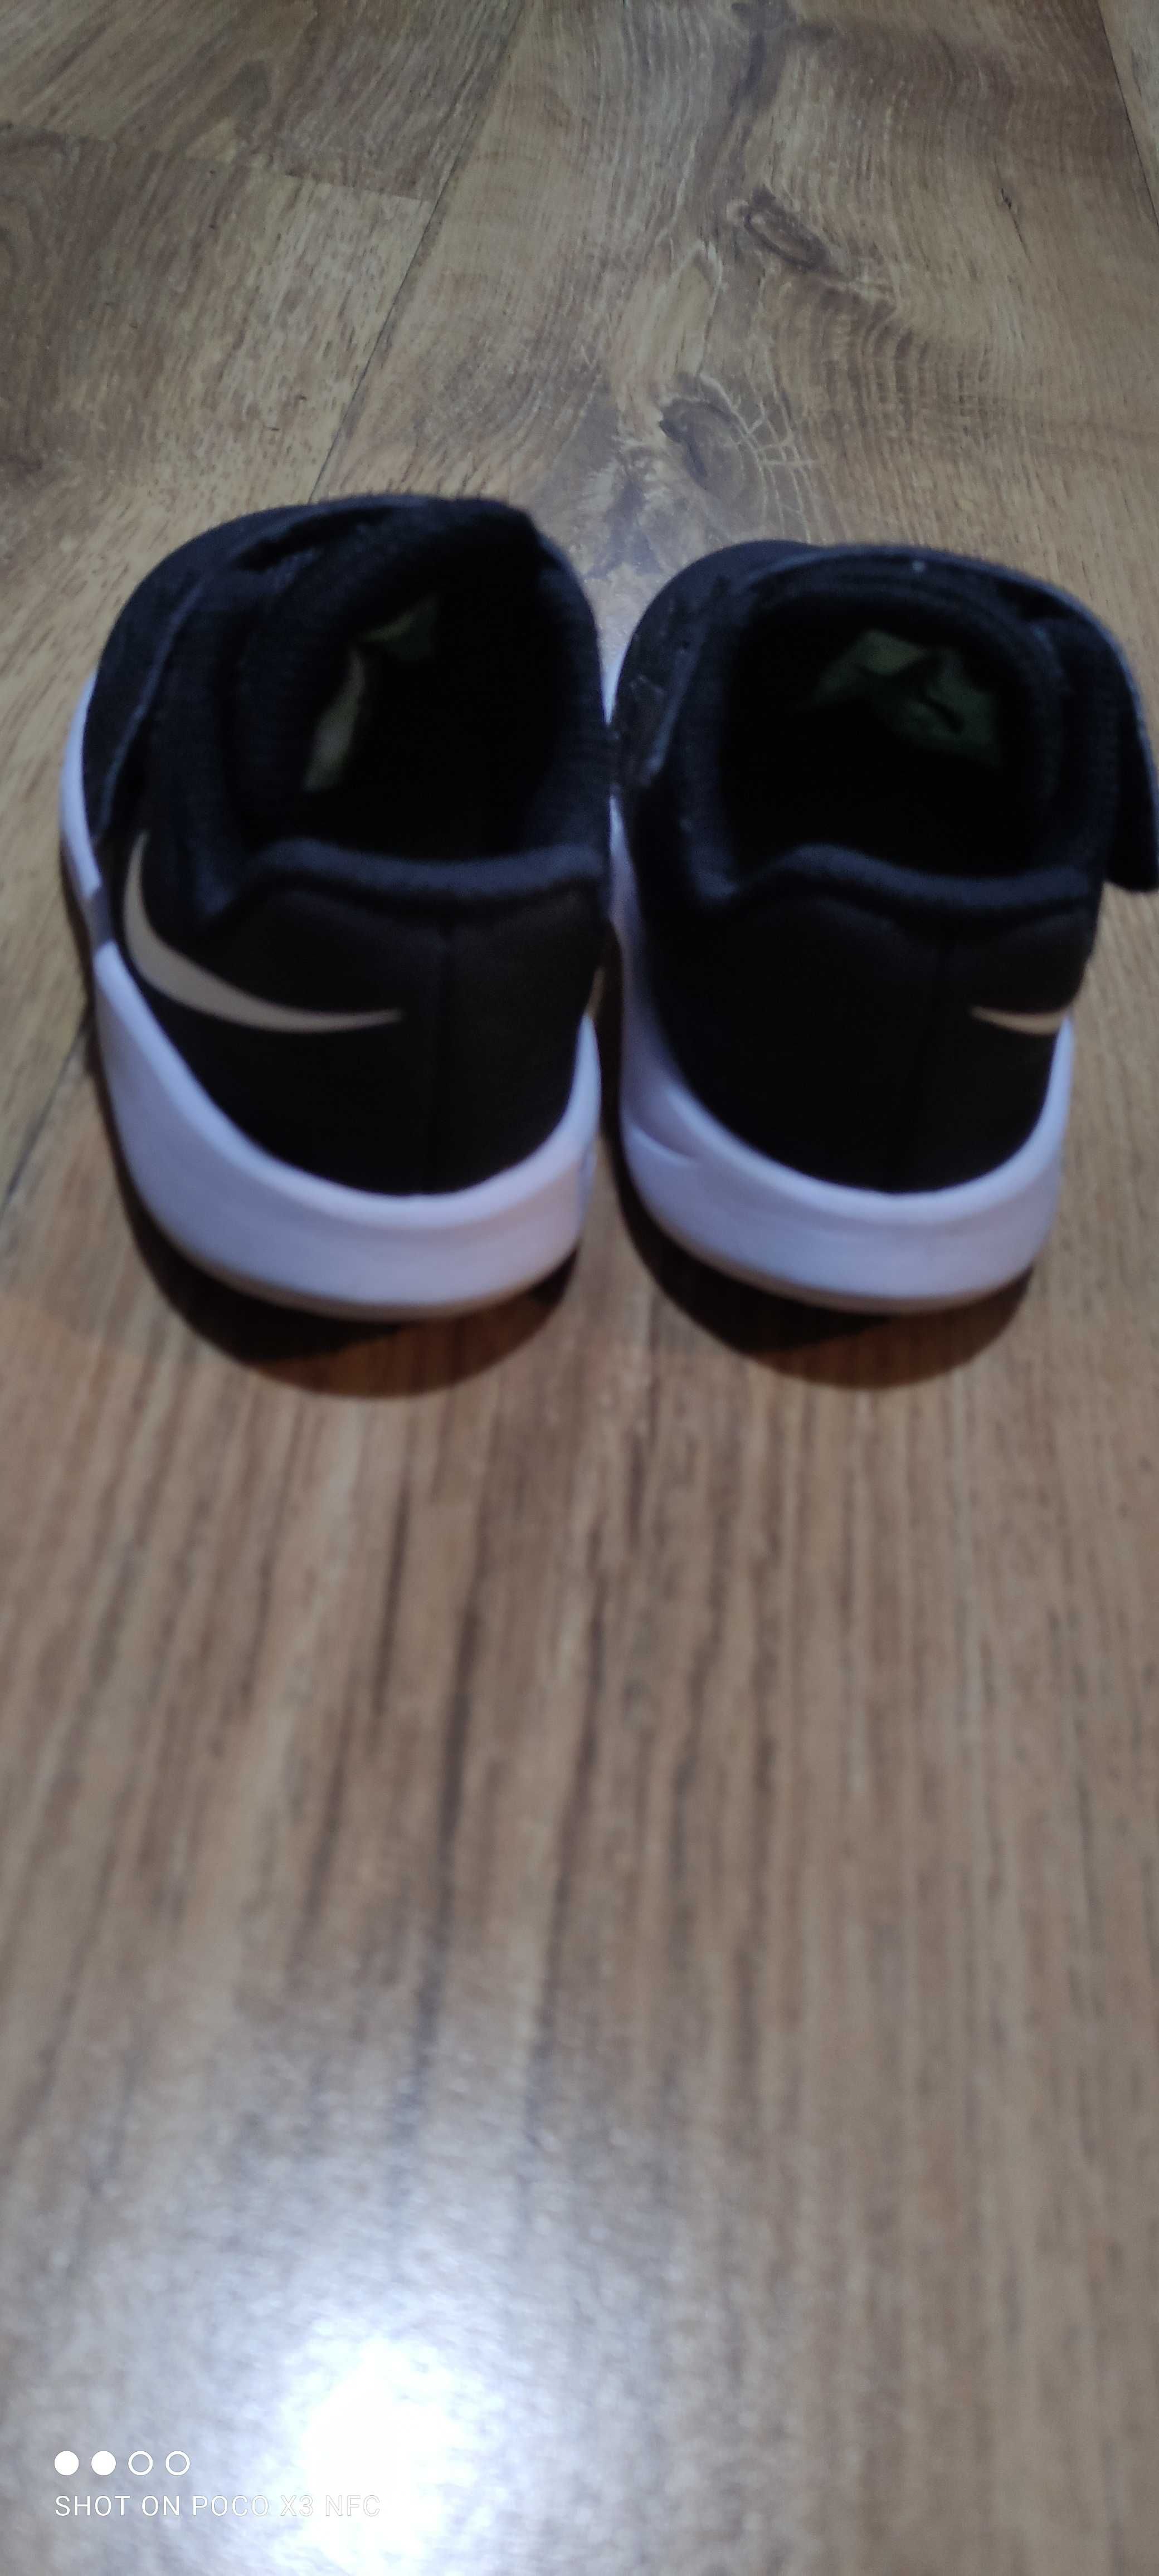 Buty dziecięce Nike rozm EUR 22, 12 cm, czarno-białe. Stan b dobry